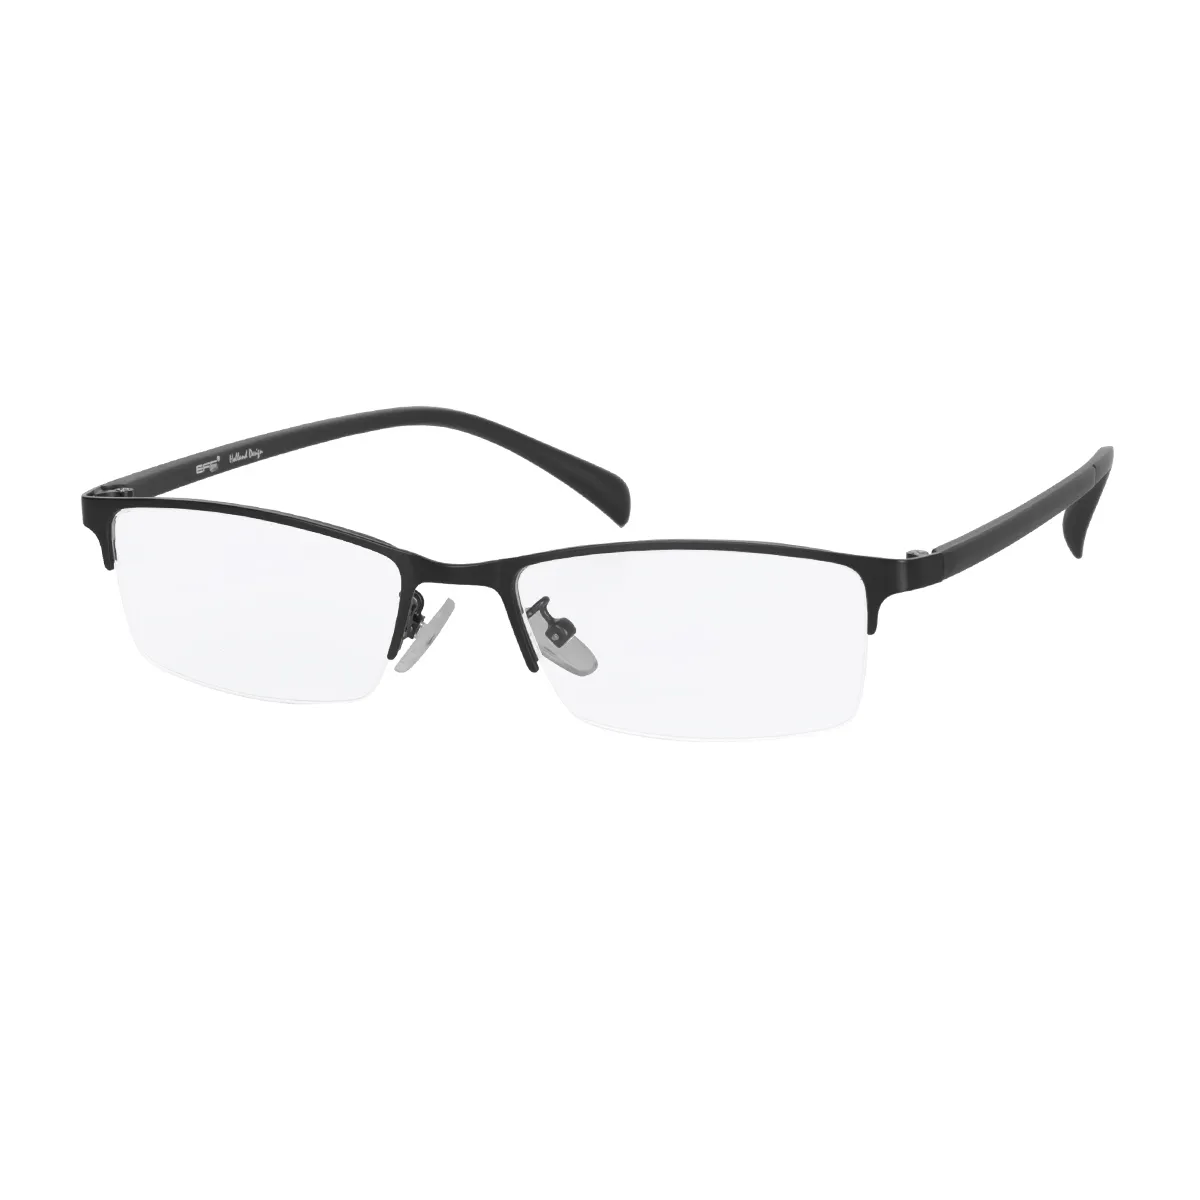 Klain - Half-Rim Black Glasses for Men - EFE